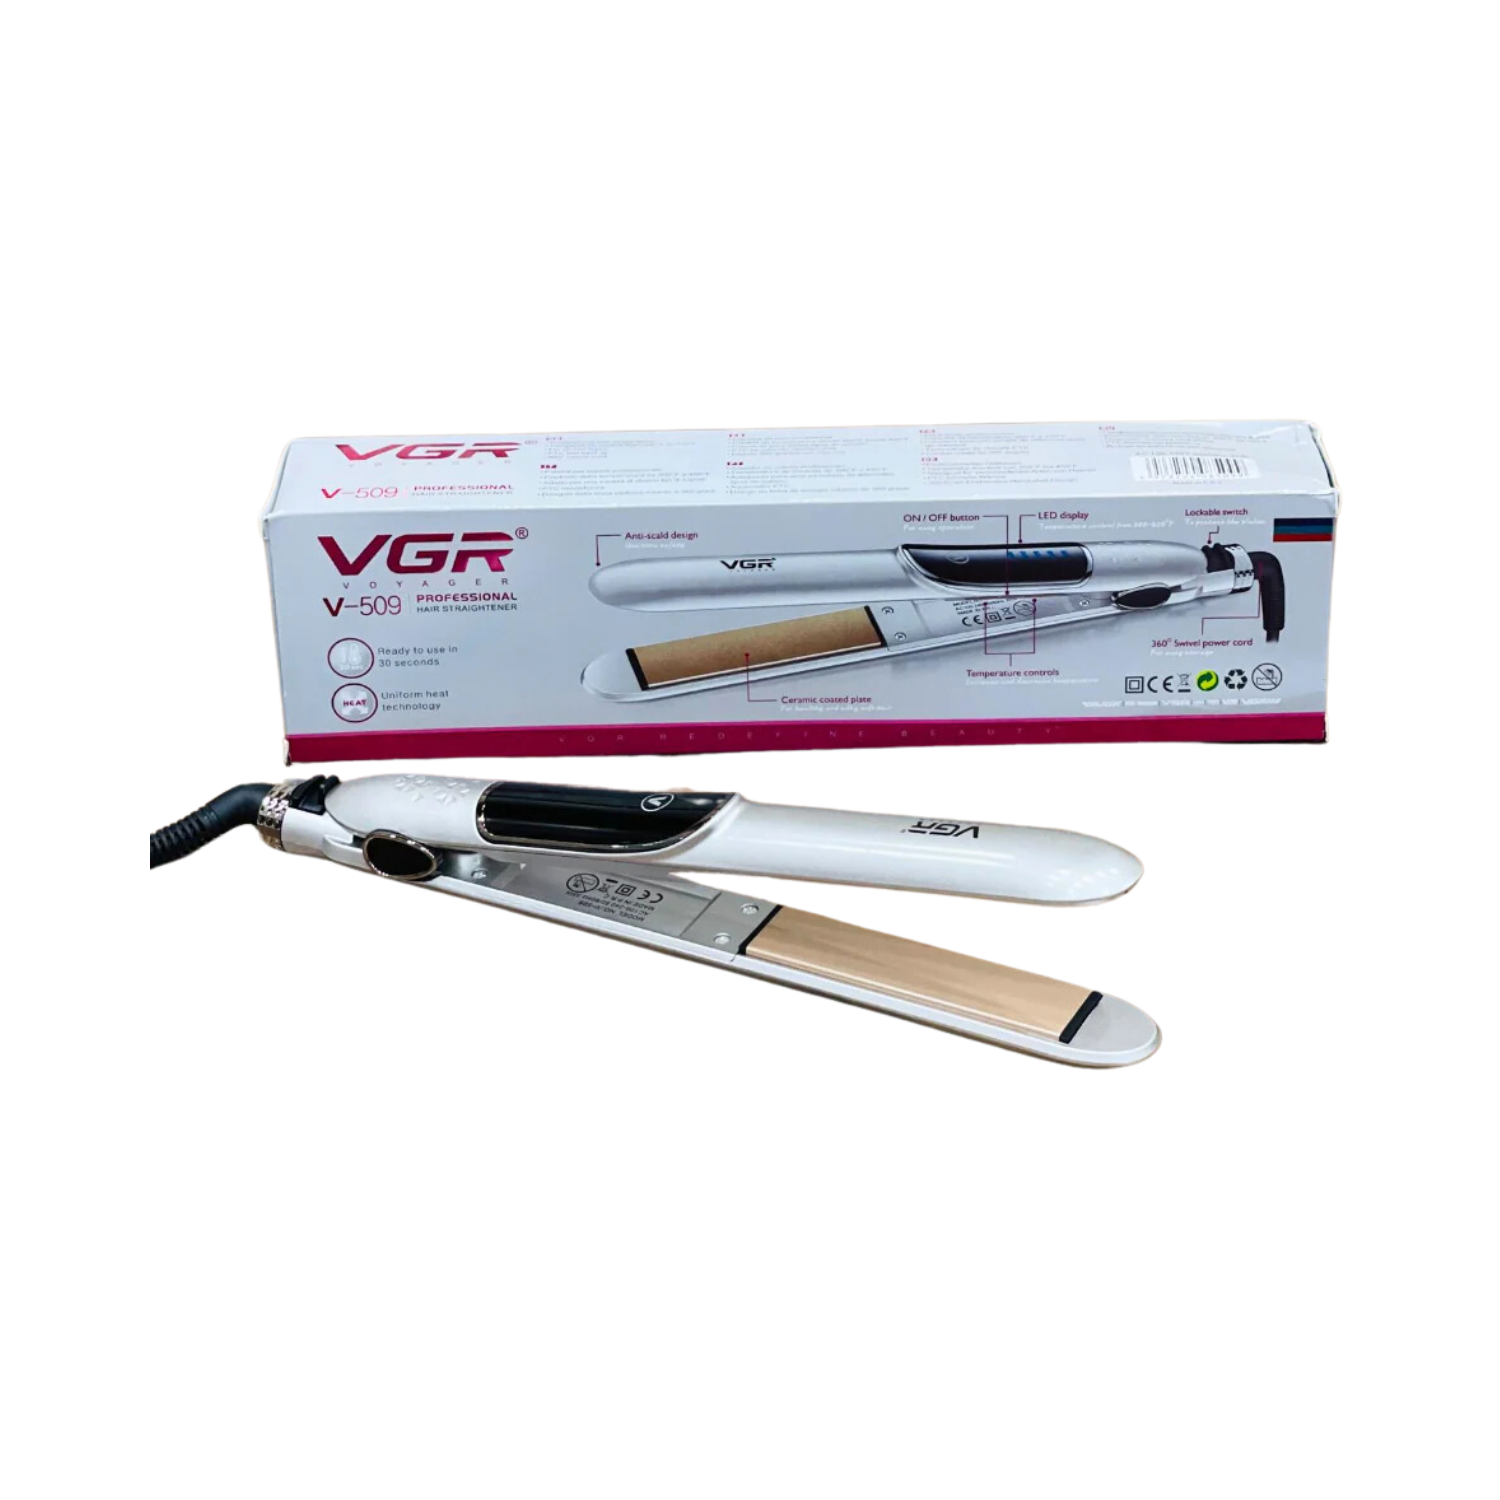 vrg-professional-hair-straightener-v-509